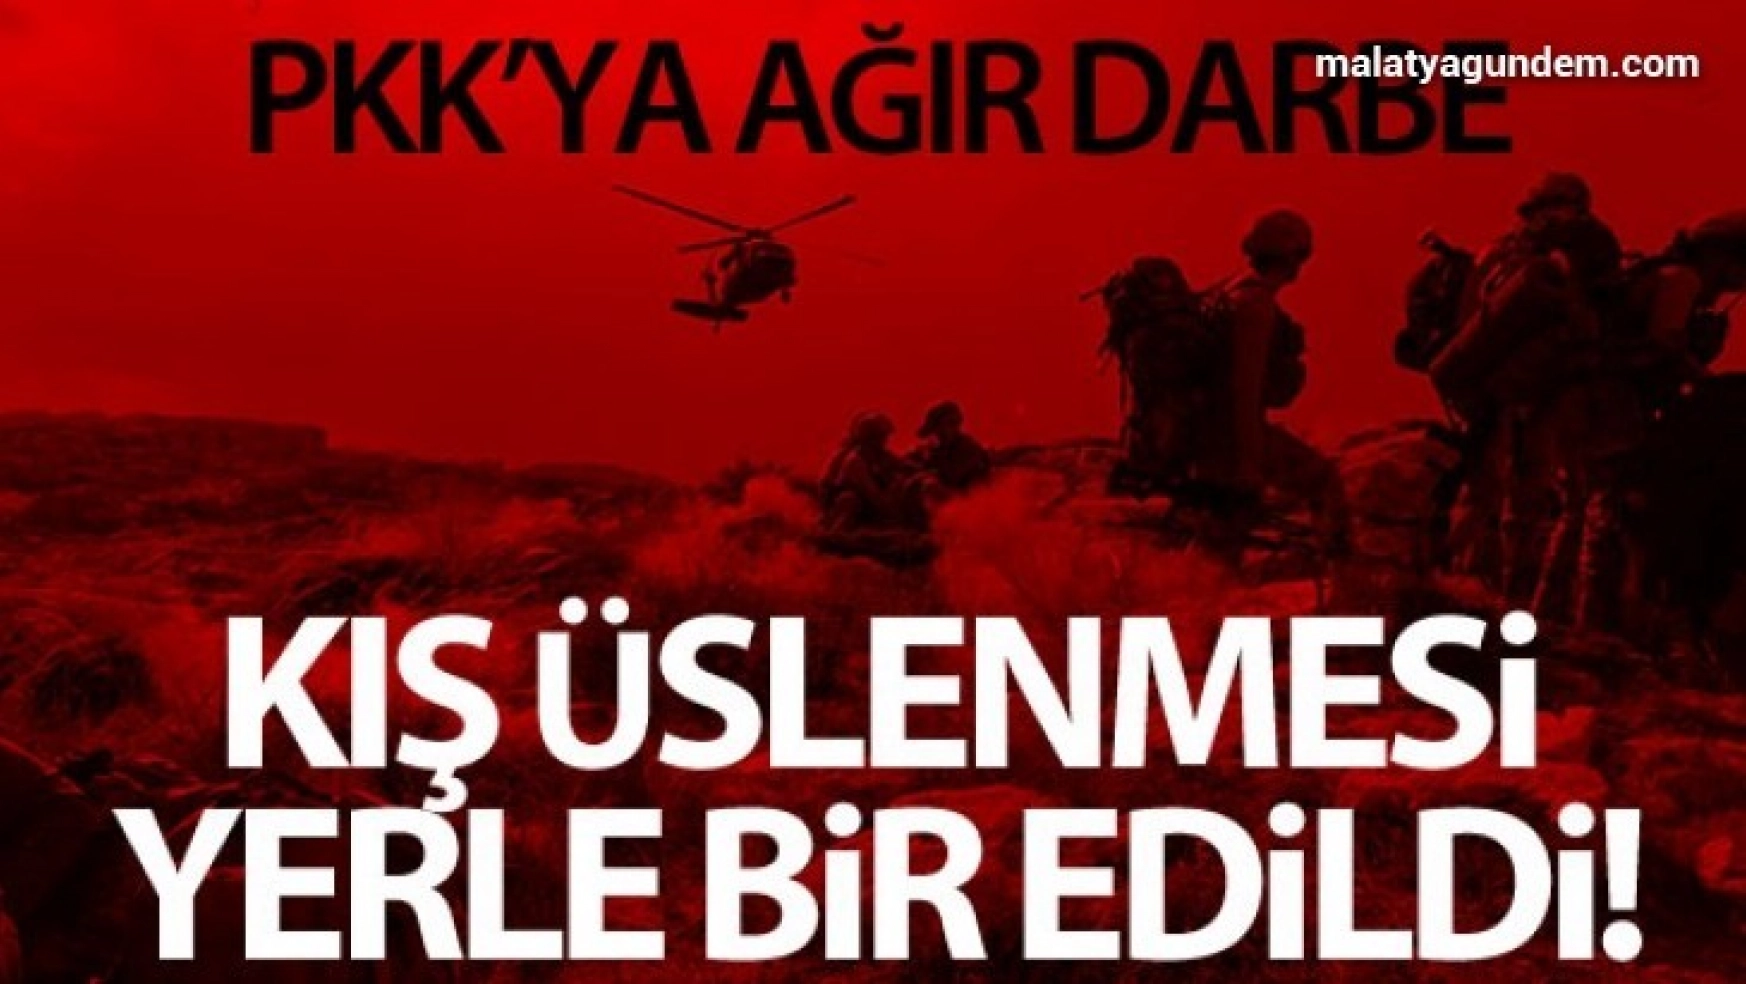 Eren Operasyonları'nda terör örgütü PKK'nın kış üstlenmesine ağır darbe